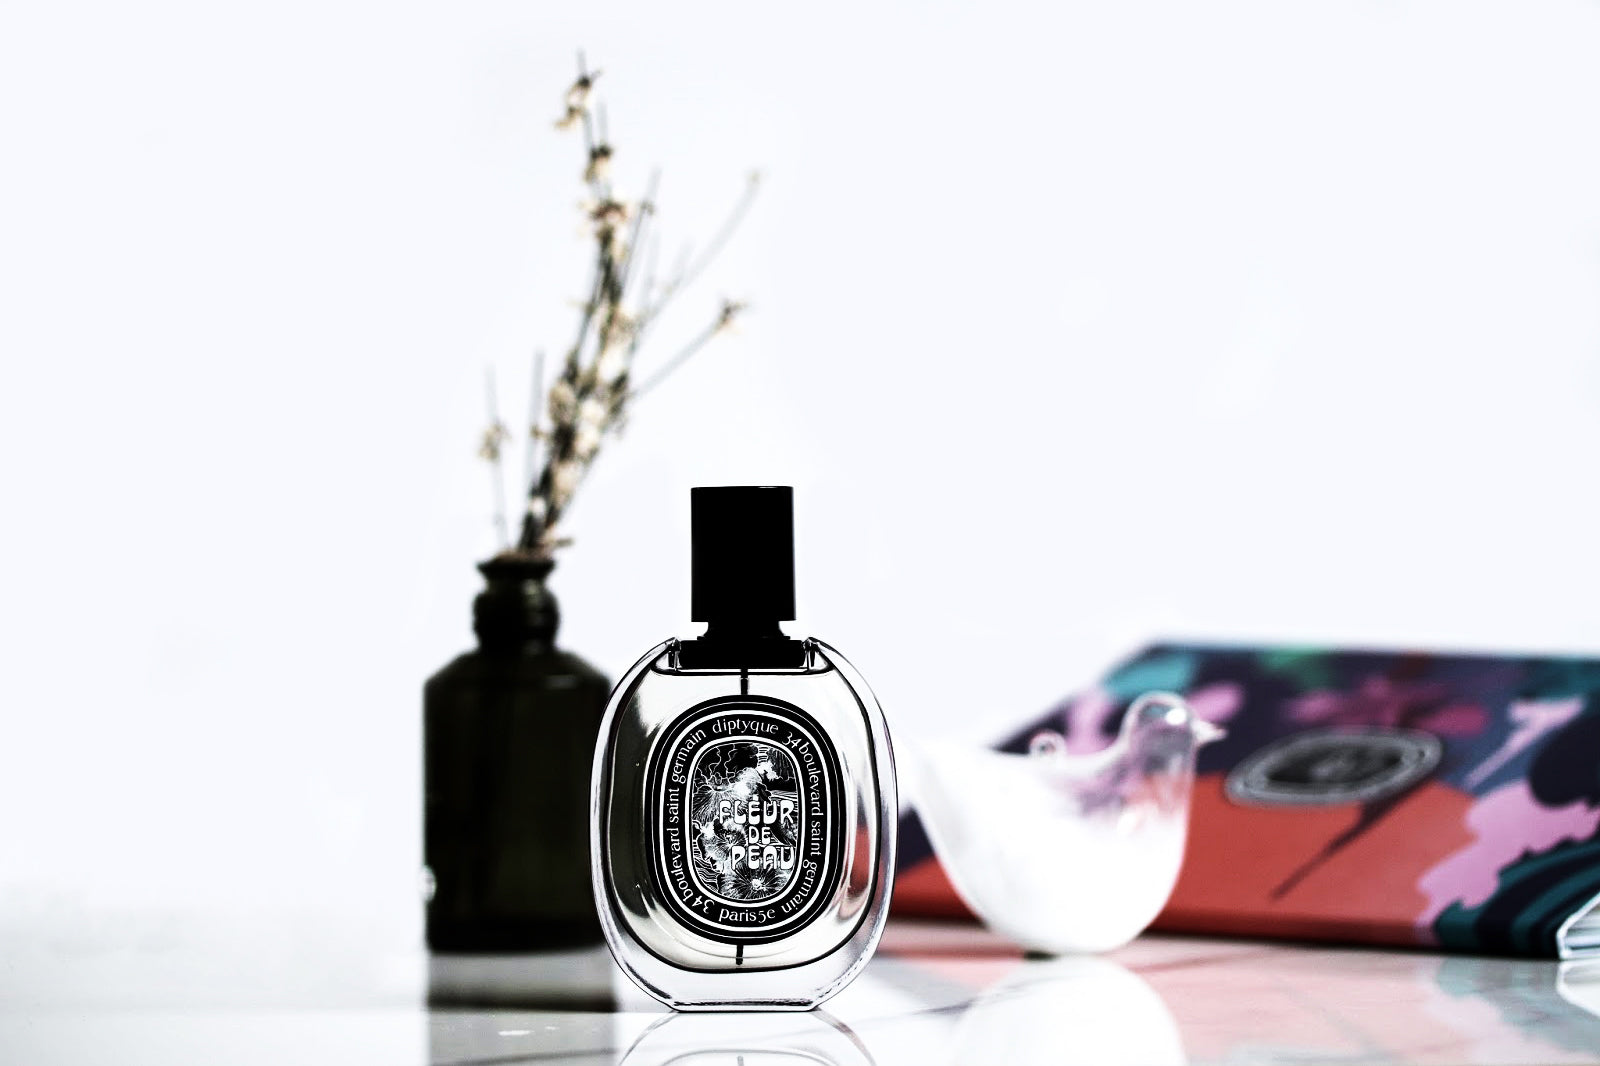 Louis Vuitton Dans la Peau Eau De Parfum 100ML – ROOYAS